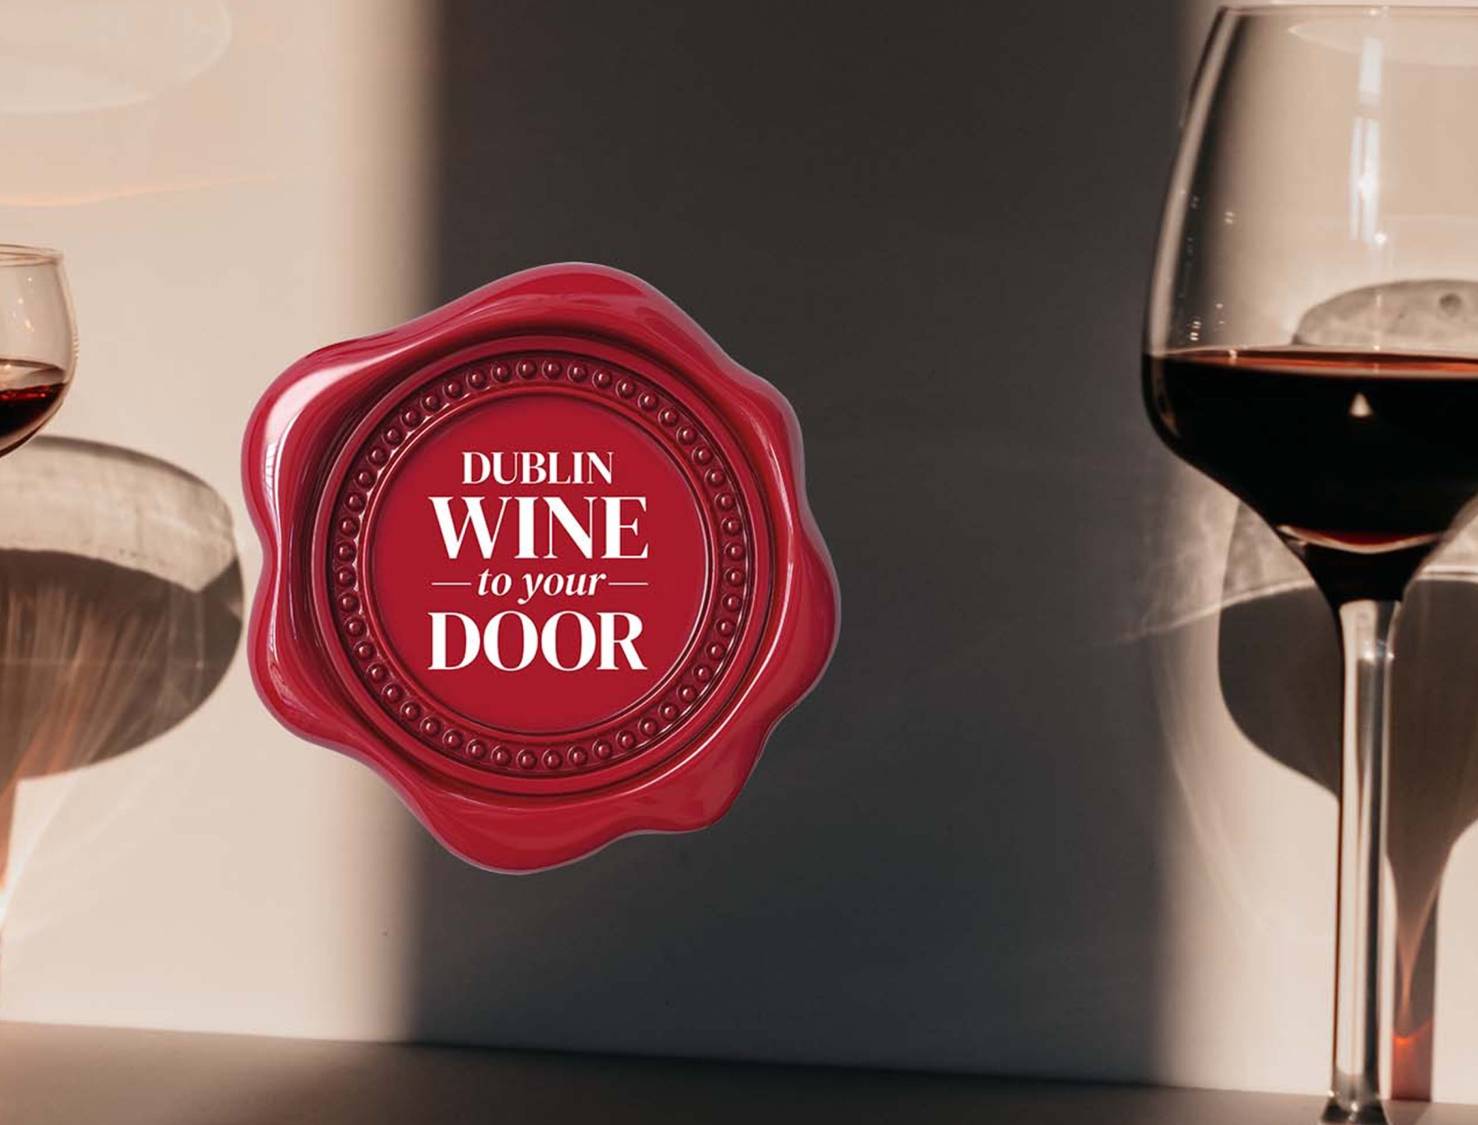 Dublin wine to your door